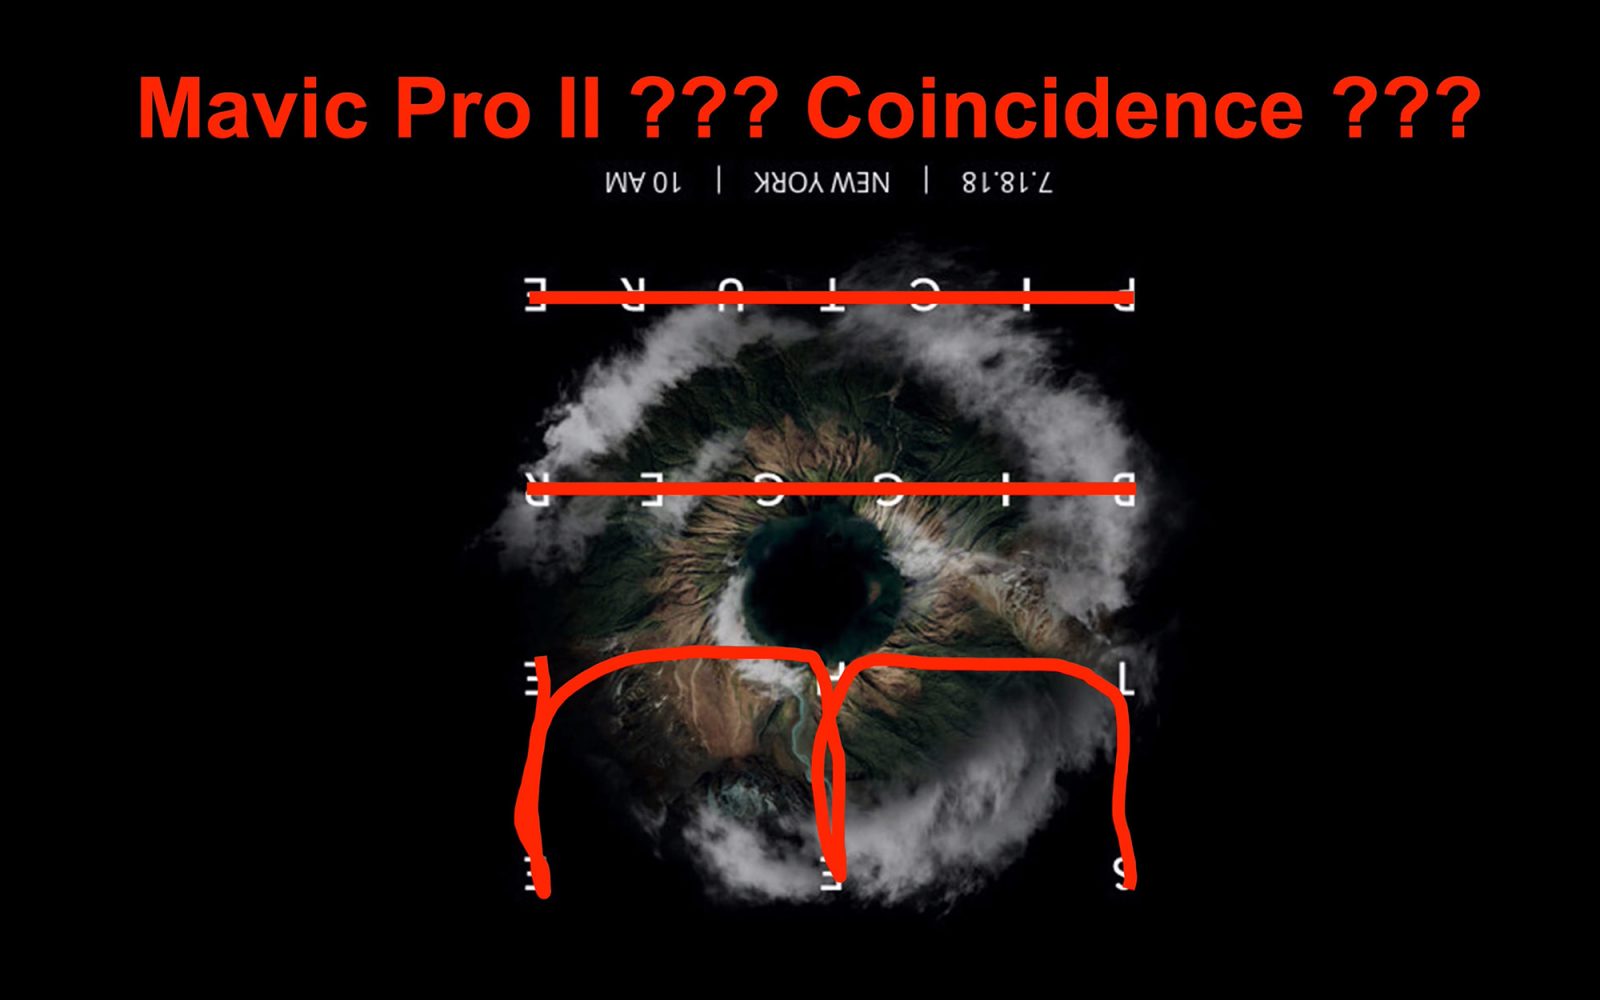 Mavic Pro II hint hidden in DJI's announcement. Coincidence or not?